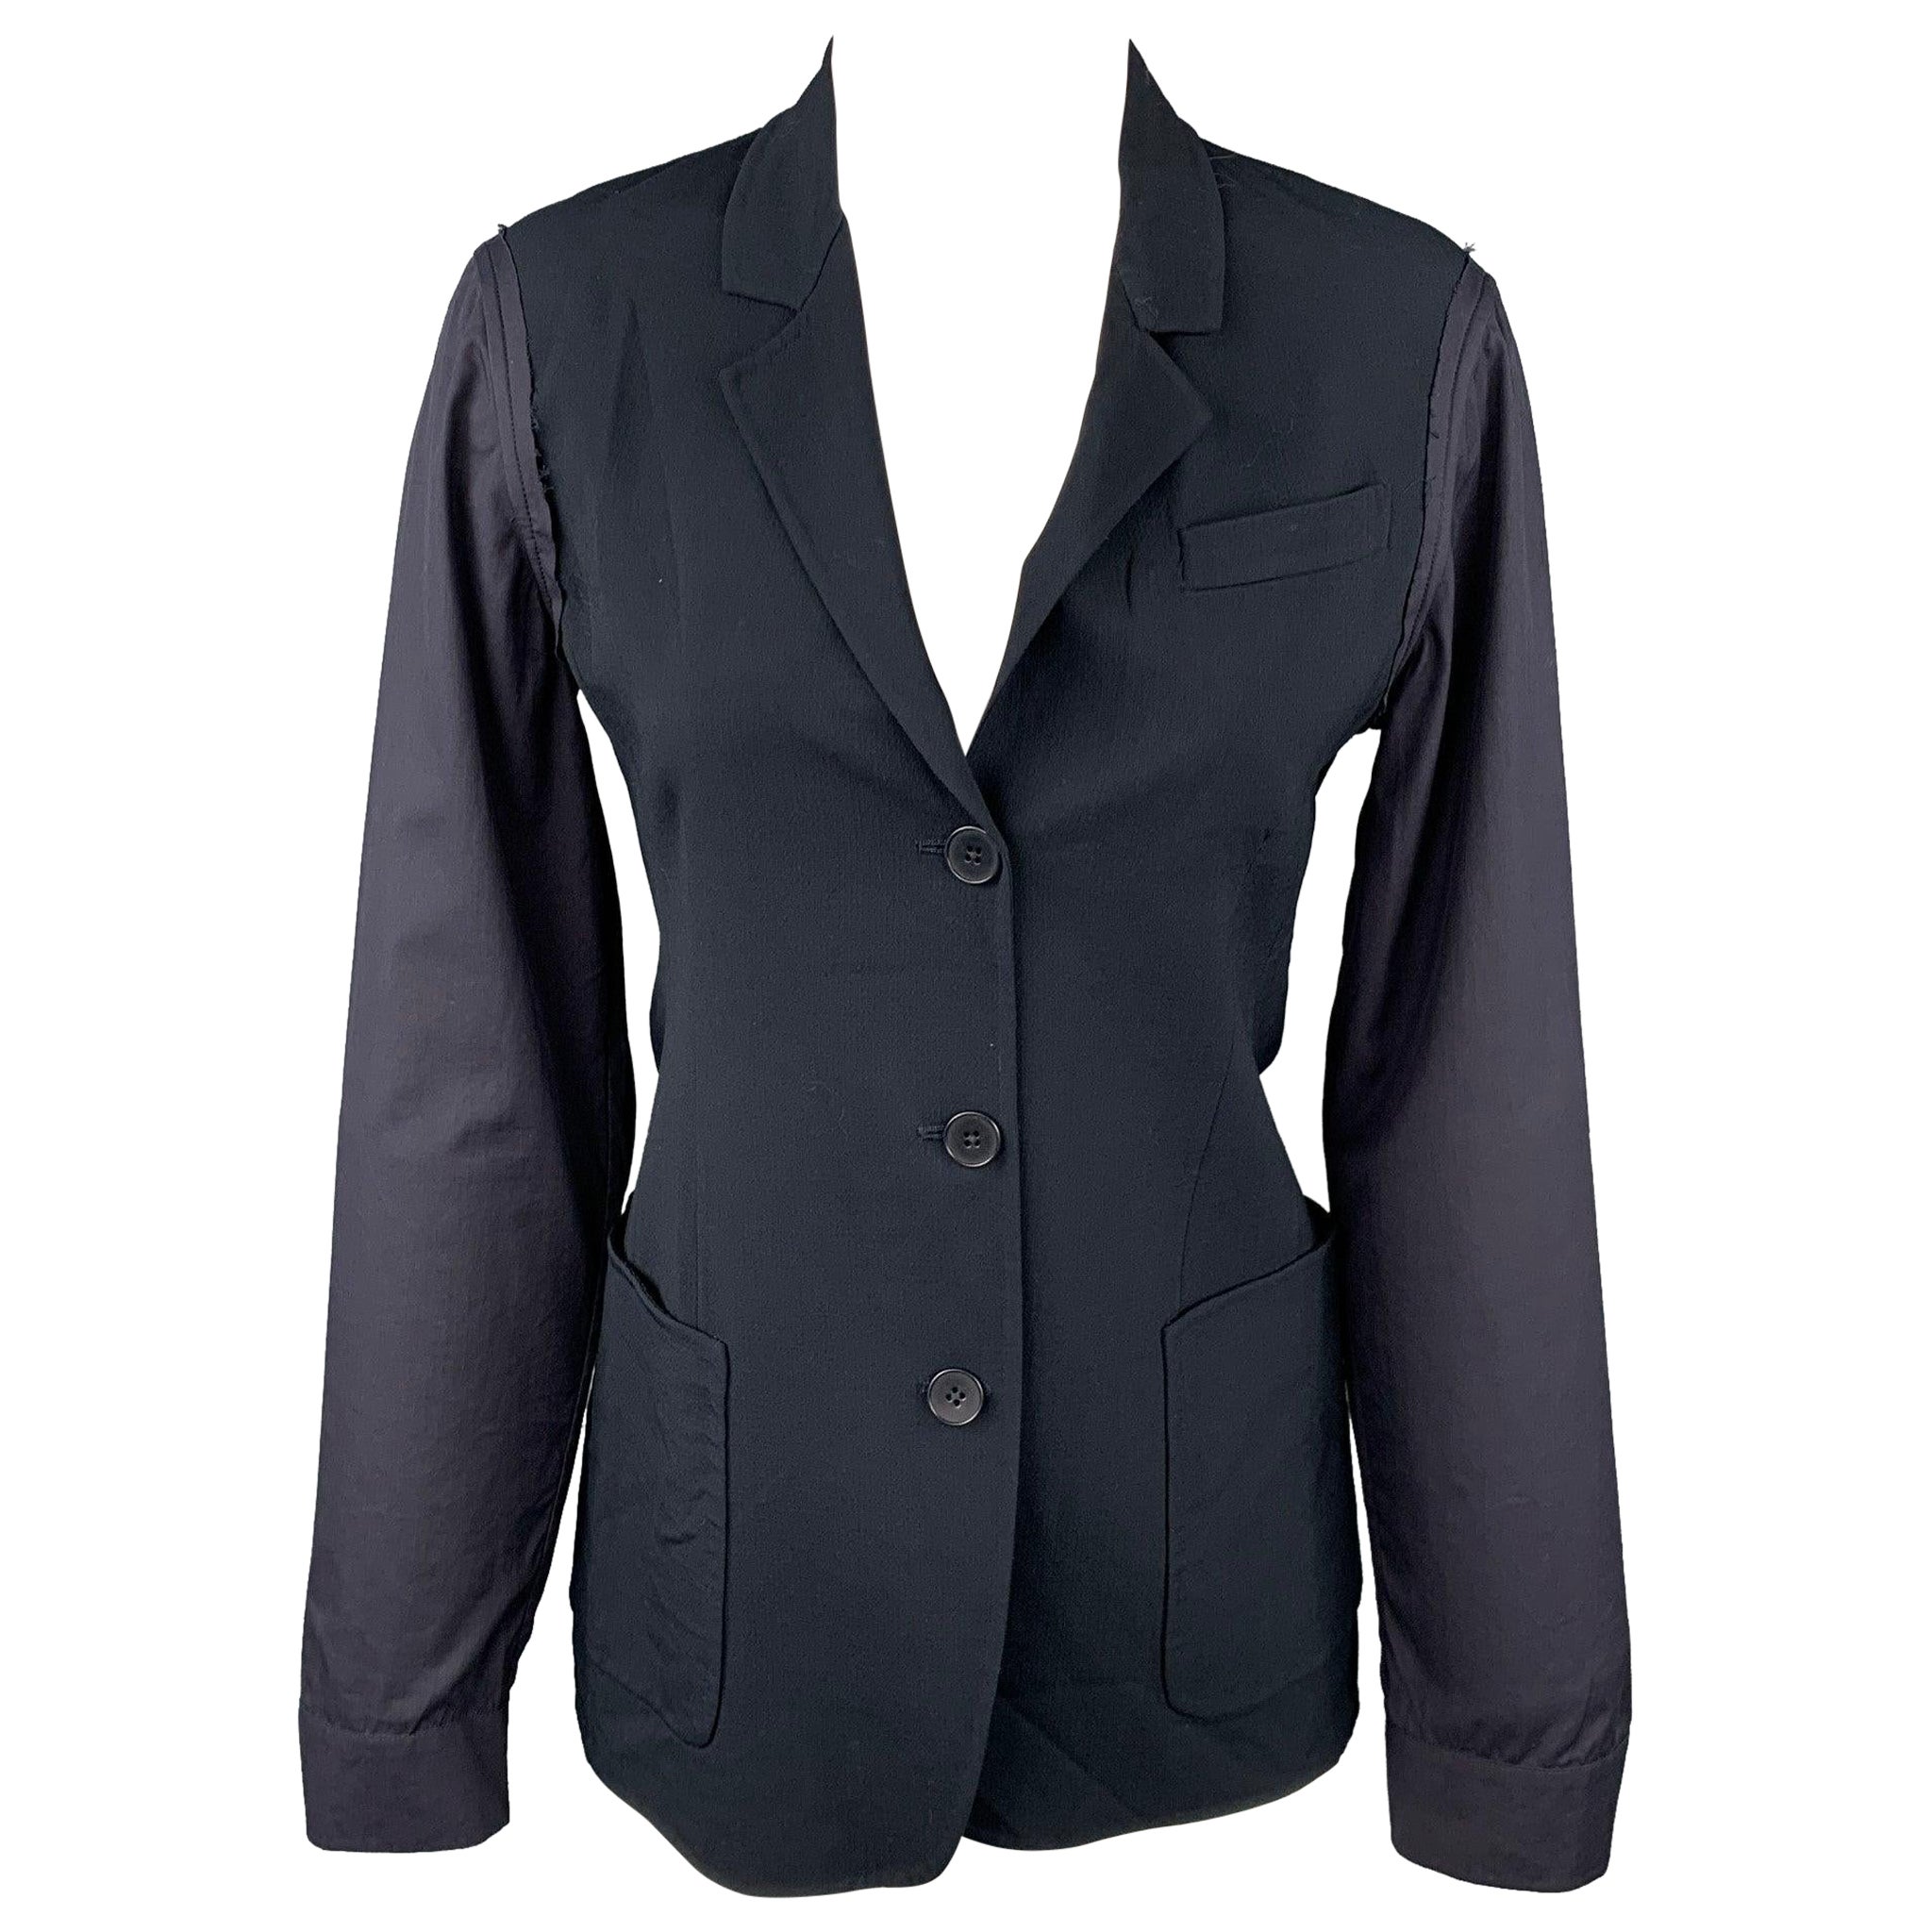 JIL SANDER Size 4 Black Virgin Wool Blend Jacket Blazer For Sale